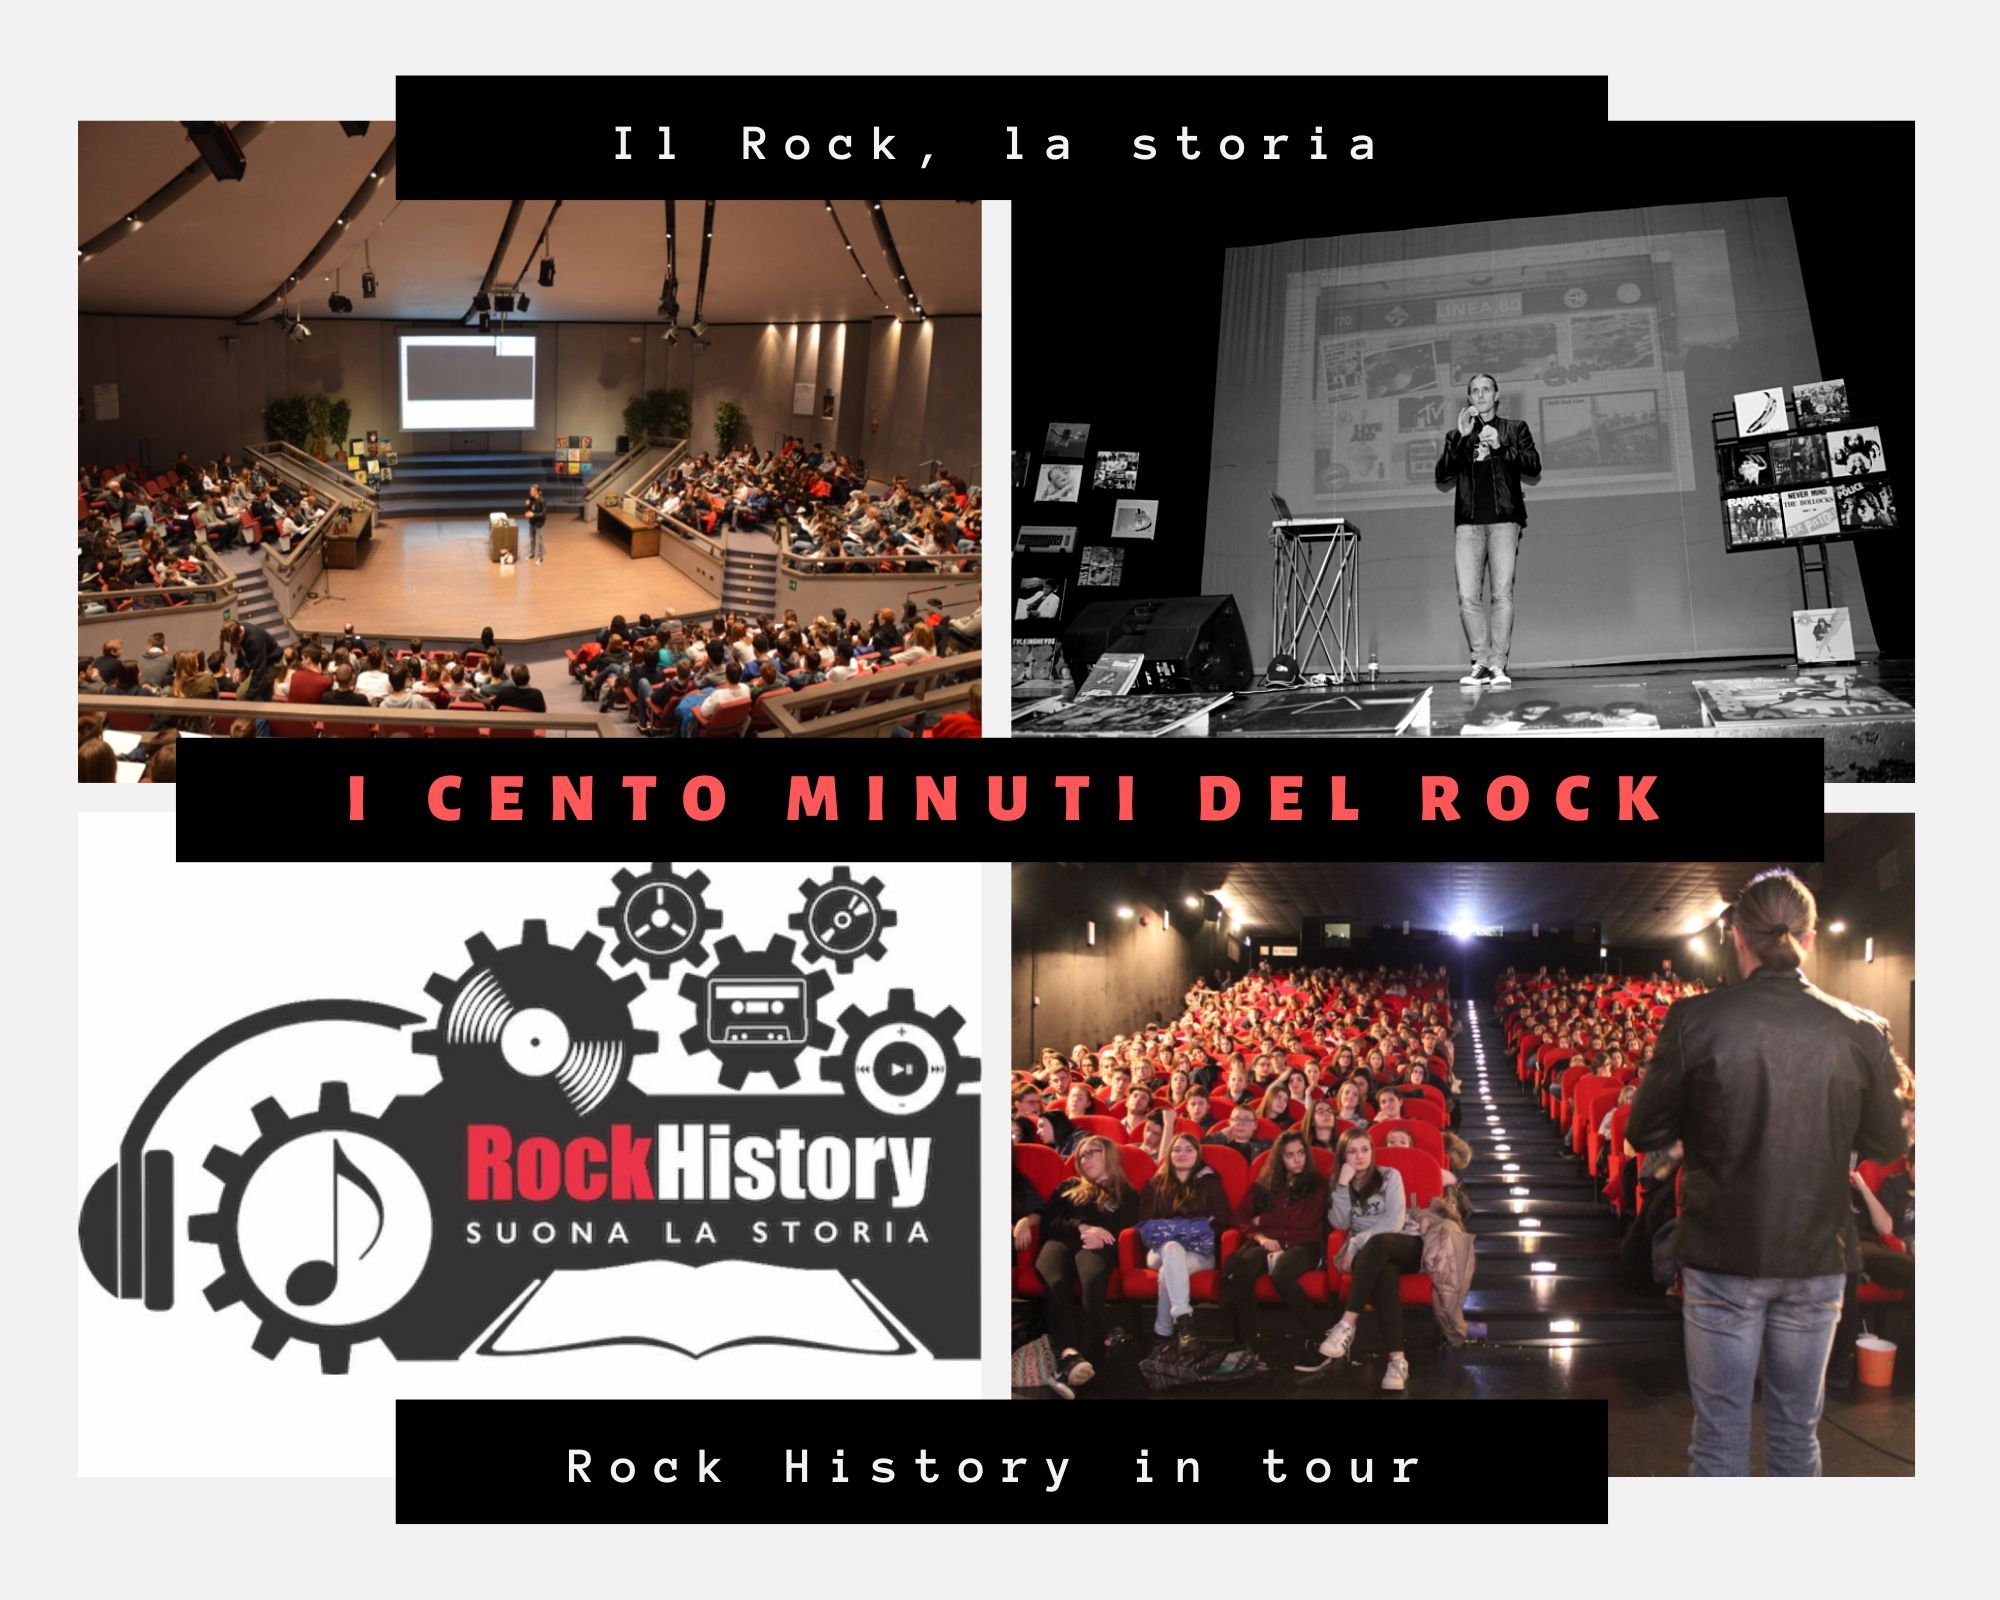 Il progetto Rock History è nato nel 2012 da un'idea di Gabriele Medeot per parlare della storia degli ultimi 50 anni ai ragazzi delle scuole attraverso il Rock. Da quando è partito, Rock History non si è più fermato e oggi prende il via la campagna di crowdfunding per far arrivare il progetto in tutta Italia.